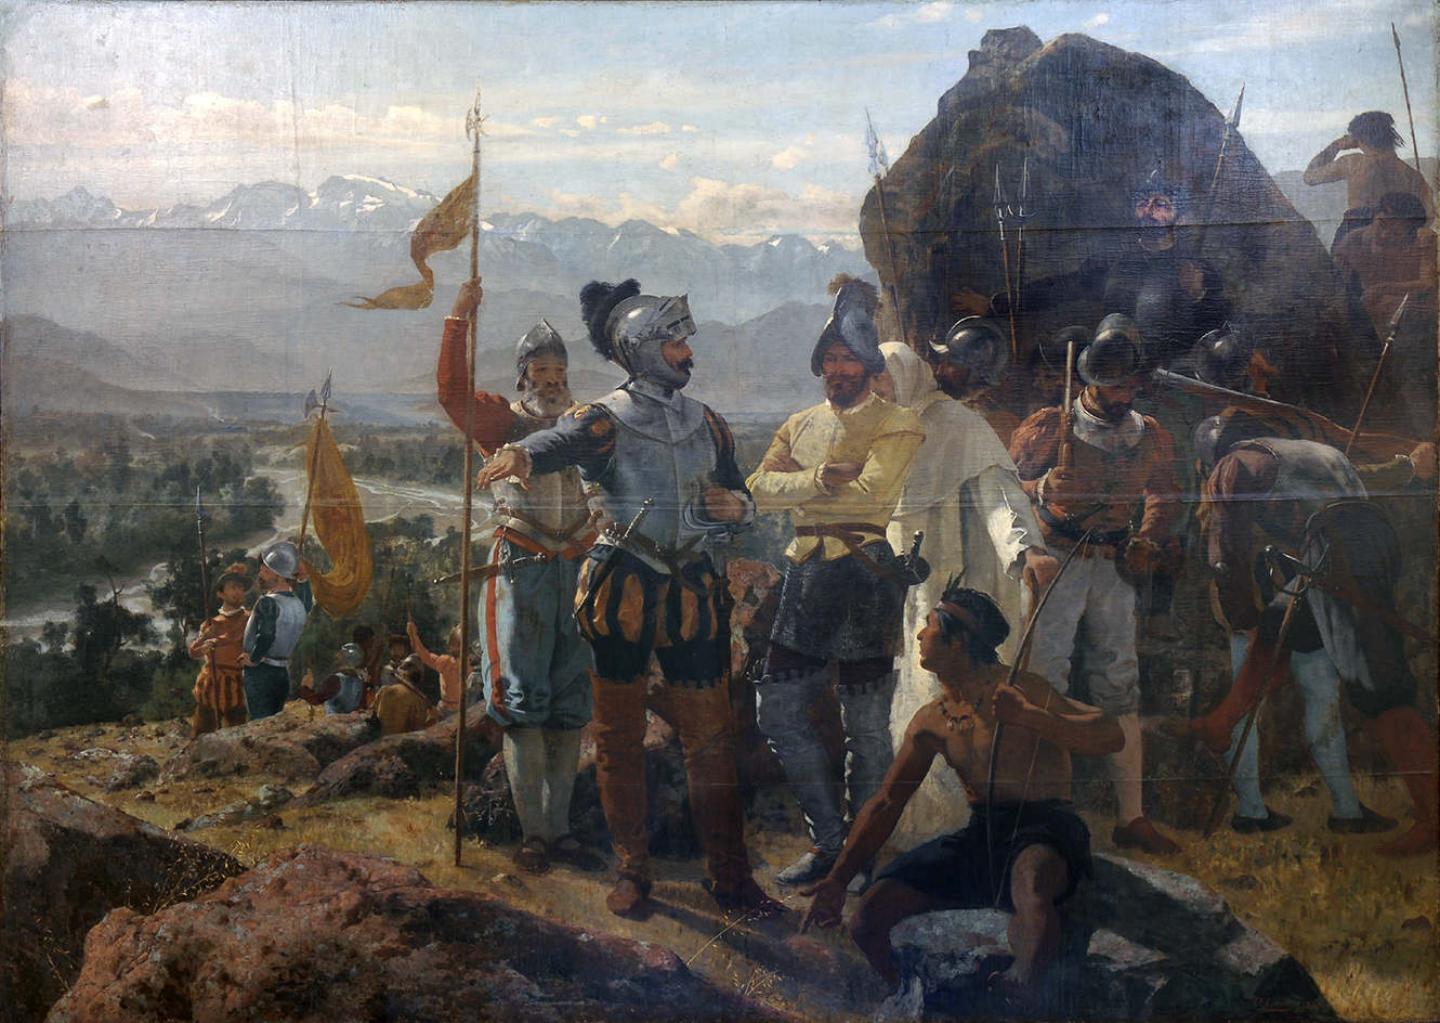 Конкистадоры стали символом ранней колониальной эпохи.